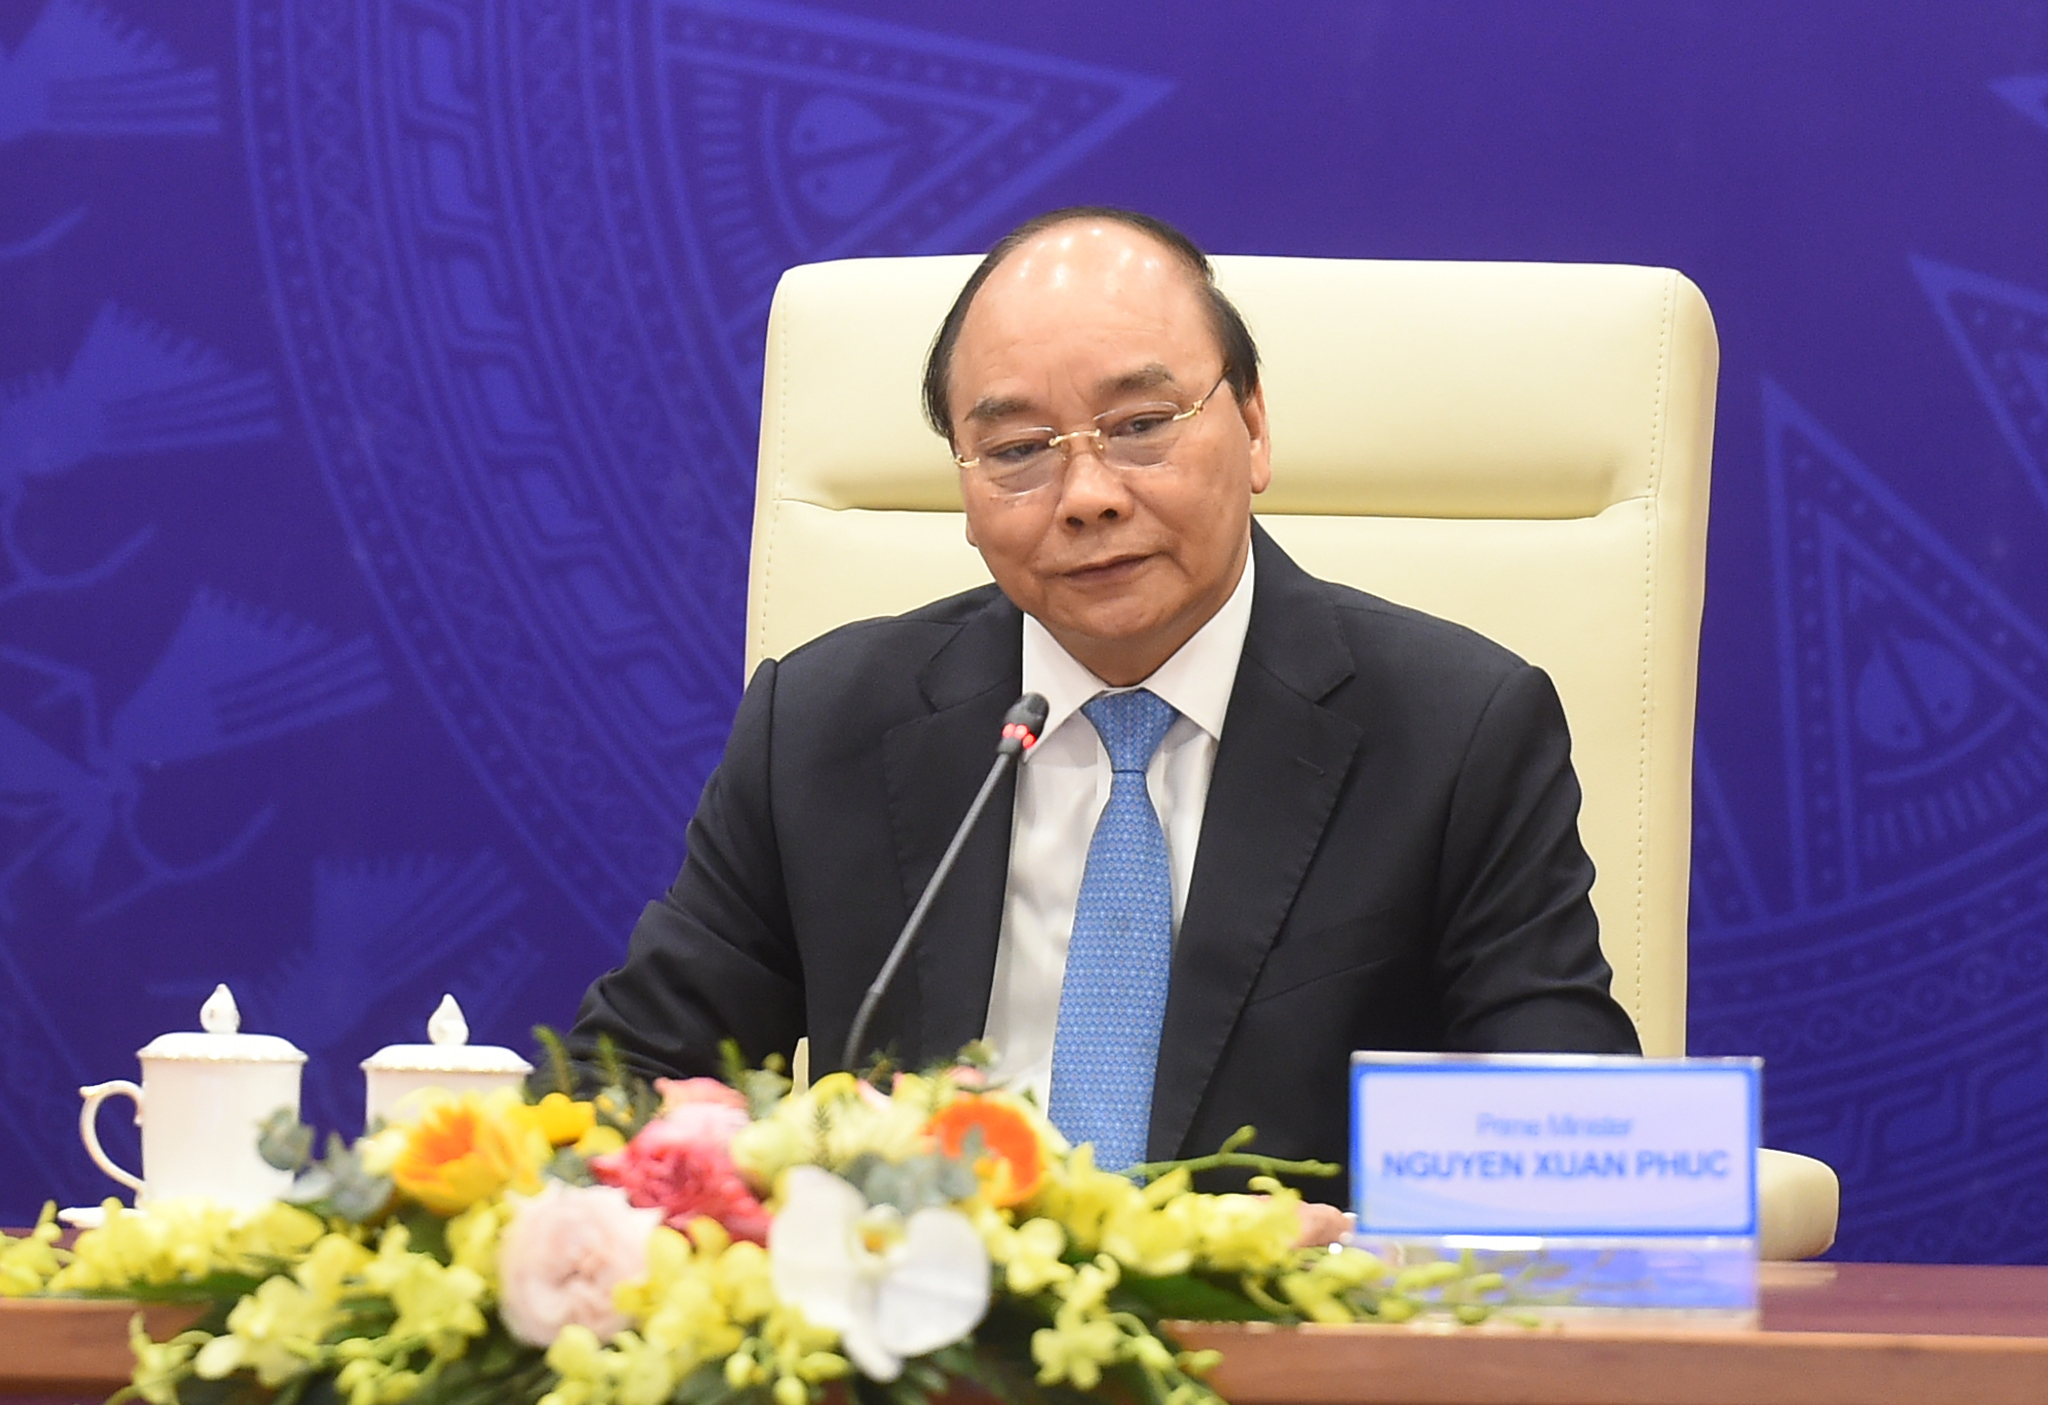 Thủ tướng Việt Nam, Lào, Campuchia nhất trí tiếp tục tạo điều kiện thông quan thuận lợi qua các cửa khẩu